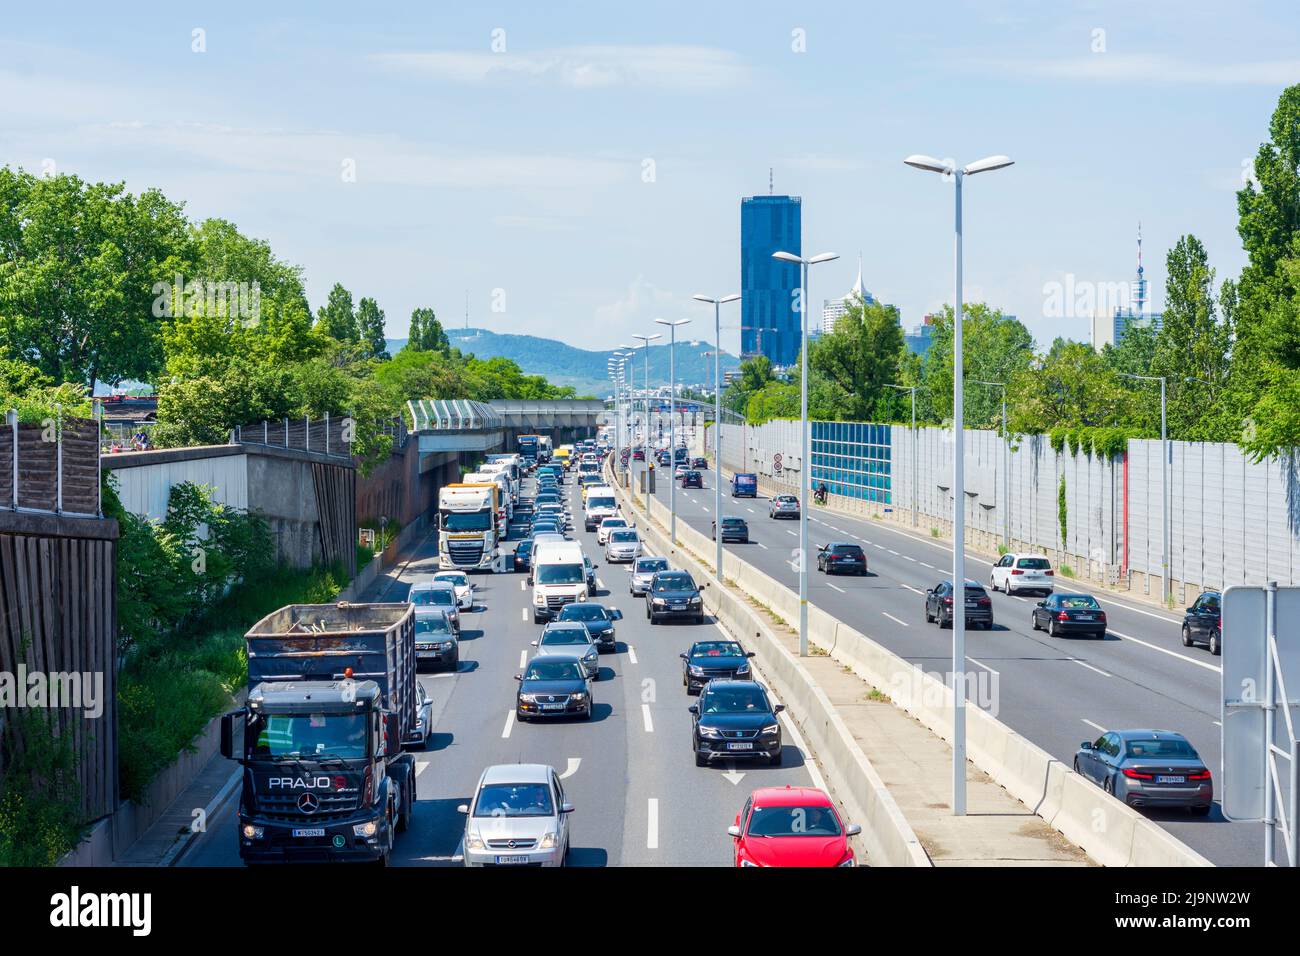 Wien, Vienna: traffic jam on freeway Donauufer Autobahn A22, DC Tower 1 in 22. Donaustadt, Wien, Austria Stock Photo